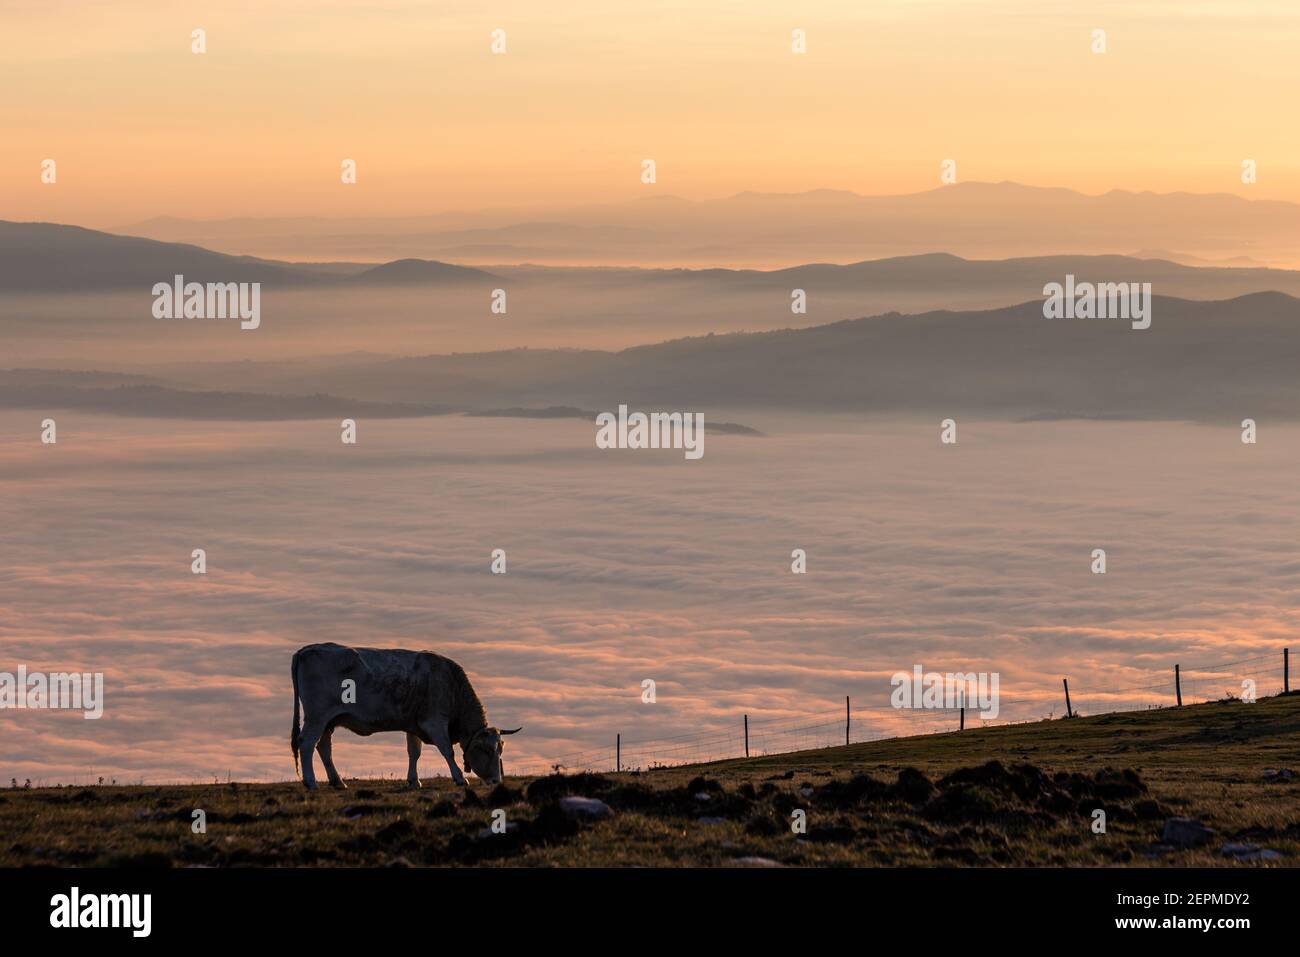 Pasteurs de vache sur une montagne, au-dessus d'une mer de brouillard au coucher du soleil Banque D'Images